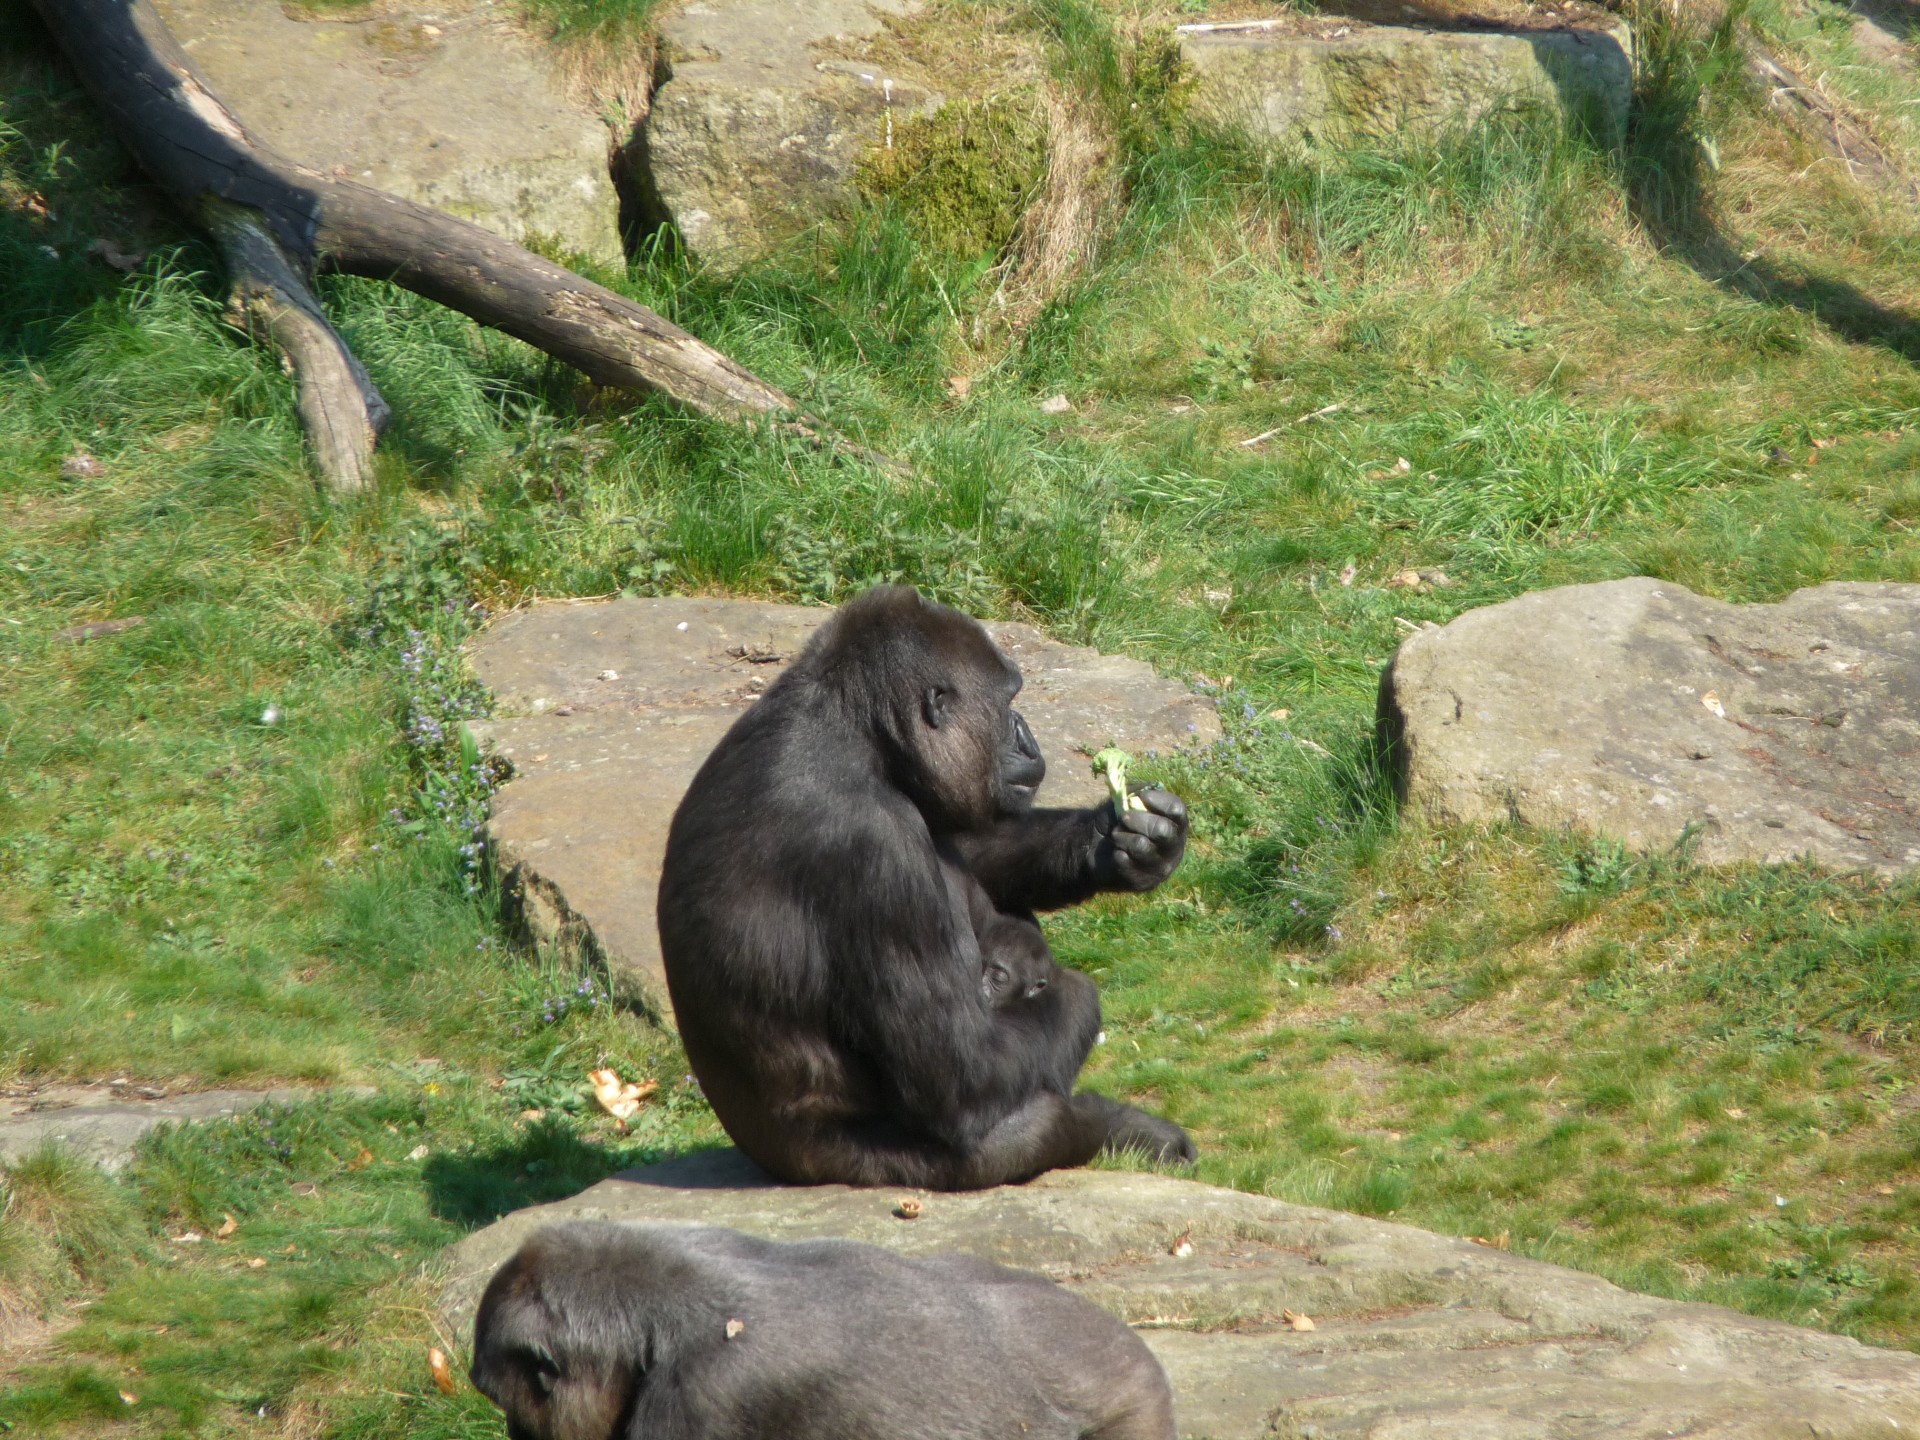 gorilla ape monkey free photo